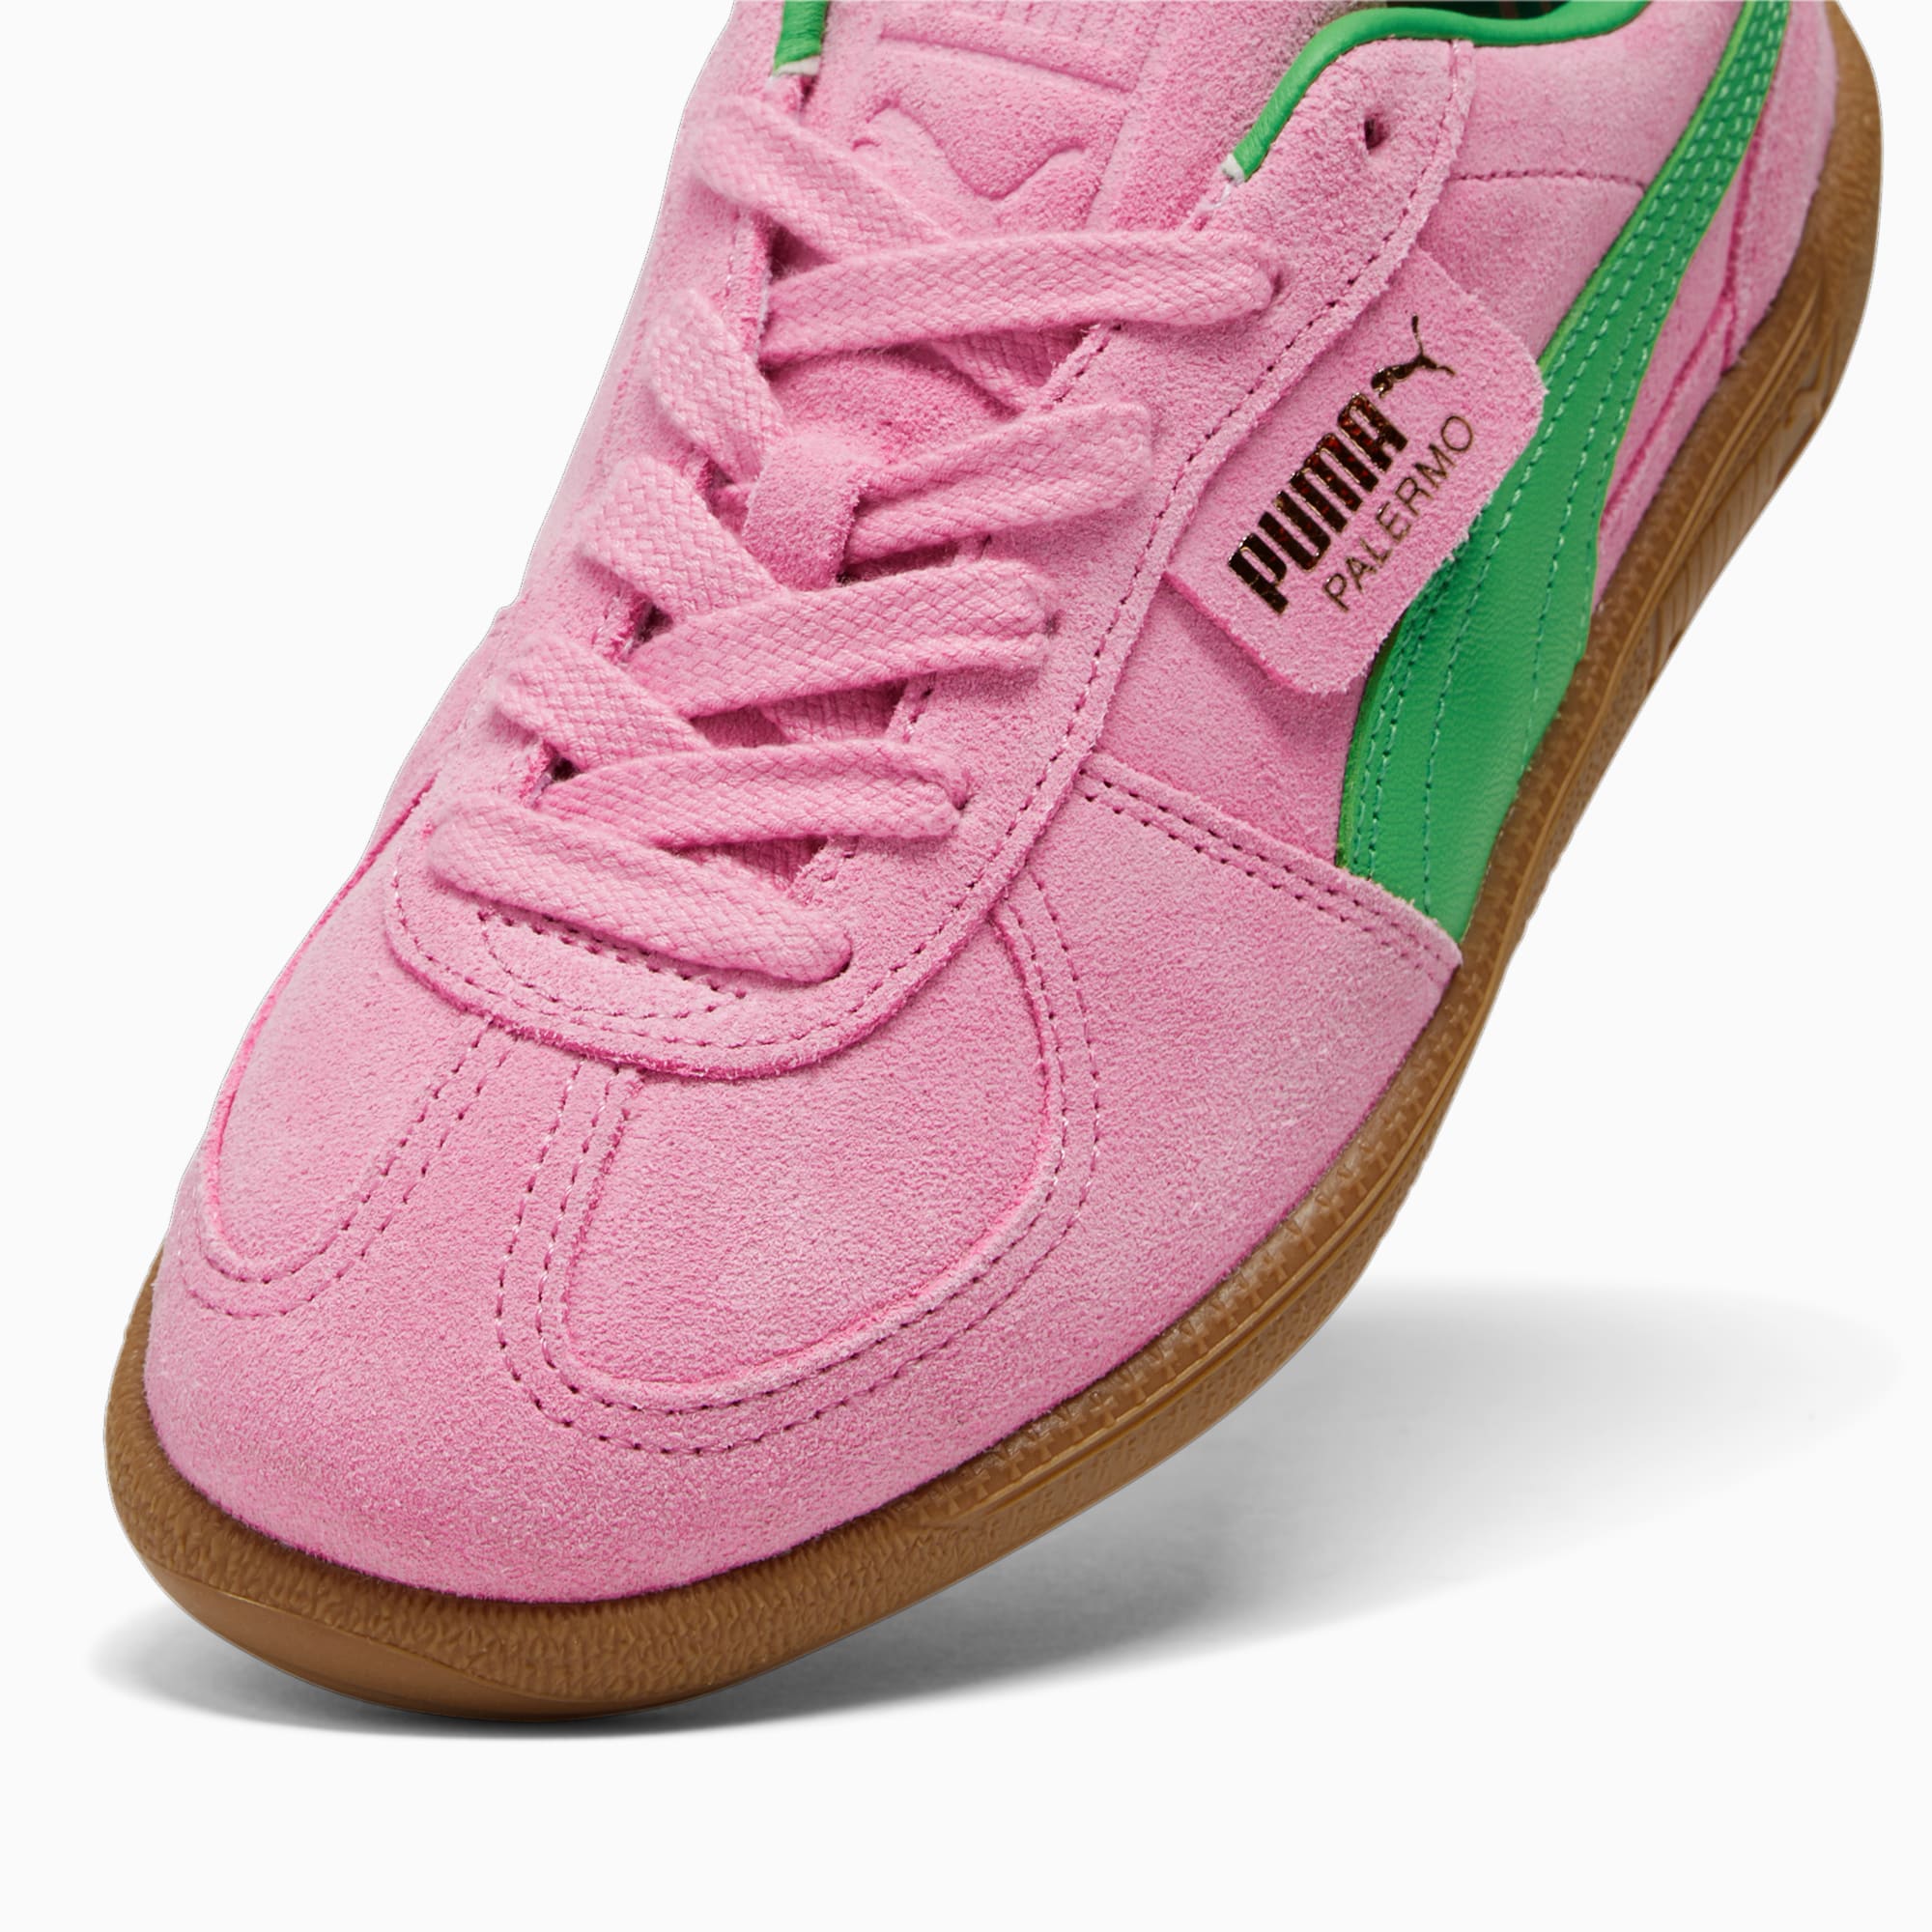 PUMA Palermo Zapatos especiales para mujer 9 5 Delicia rosa/Puma Verde/Gum